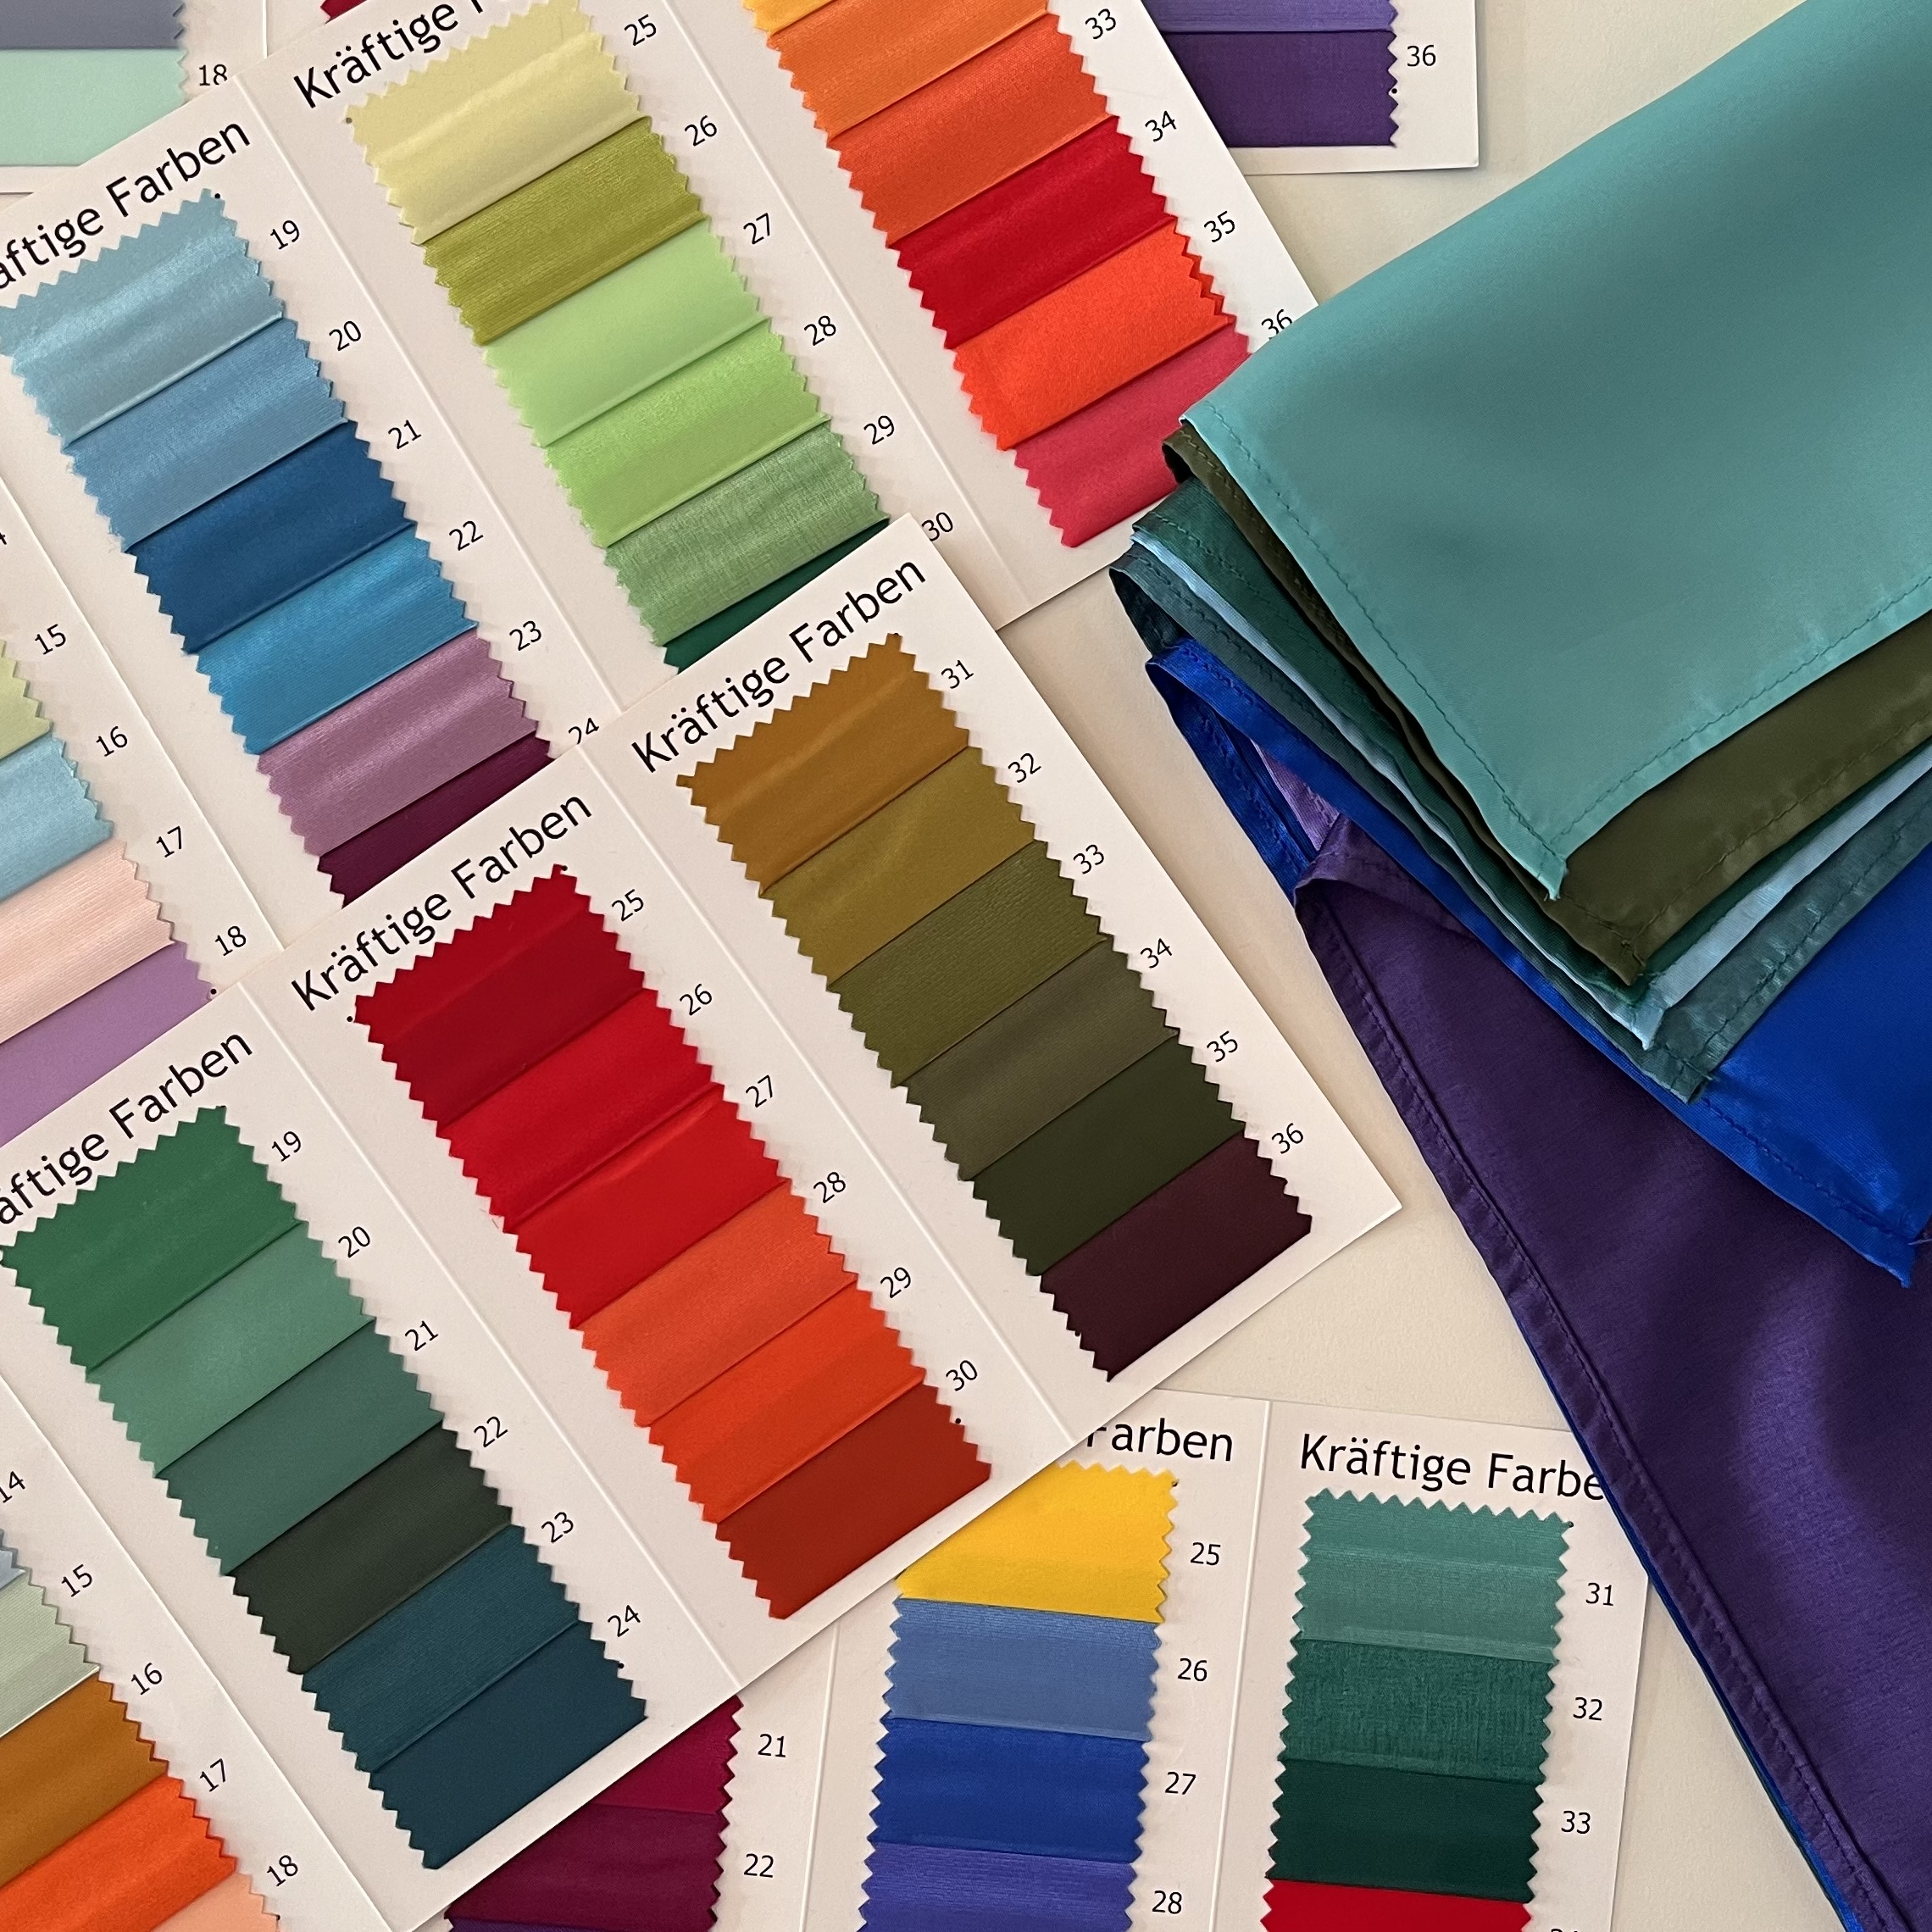 "Farbkarten und Tücher, die bei Farbberatungen verwendet werden."